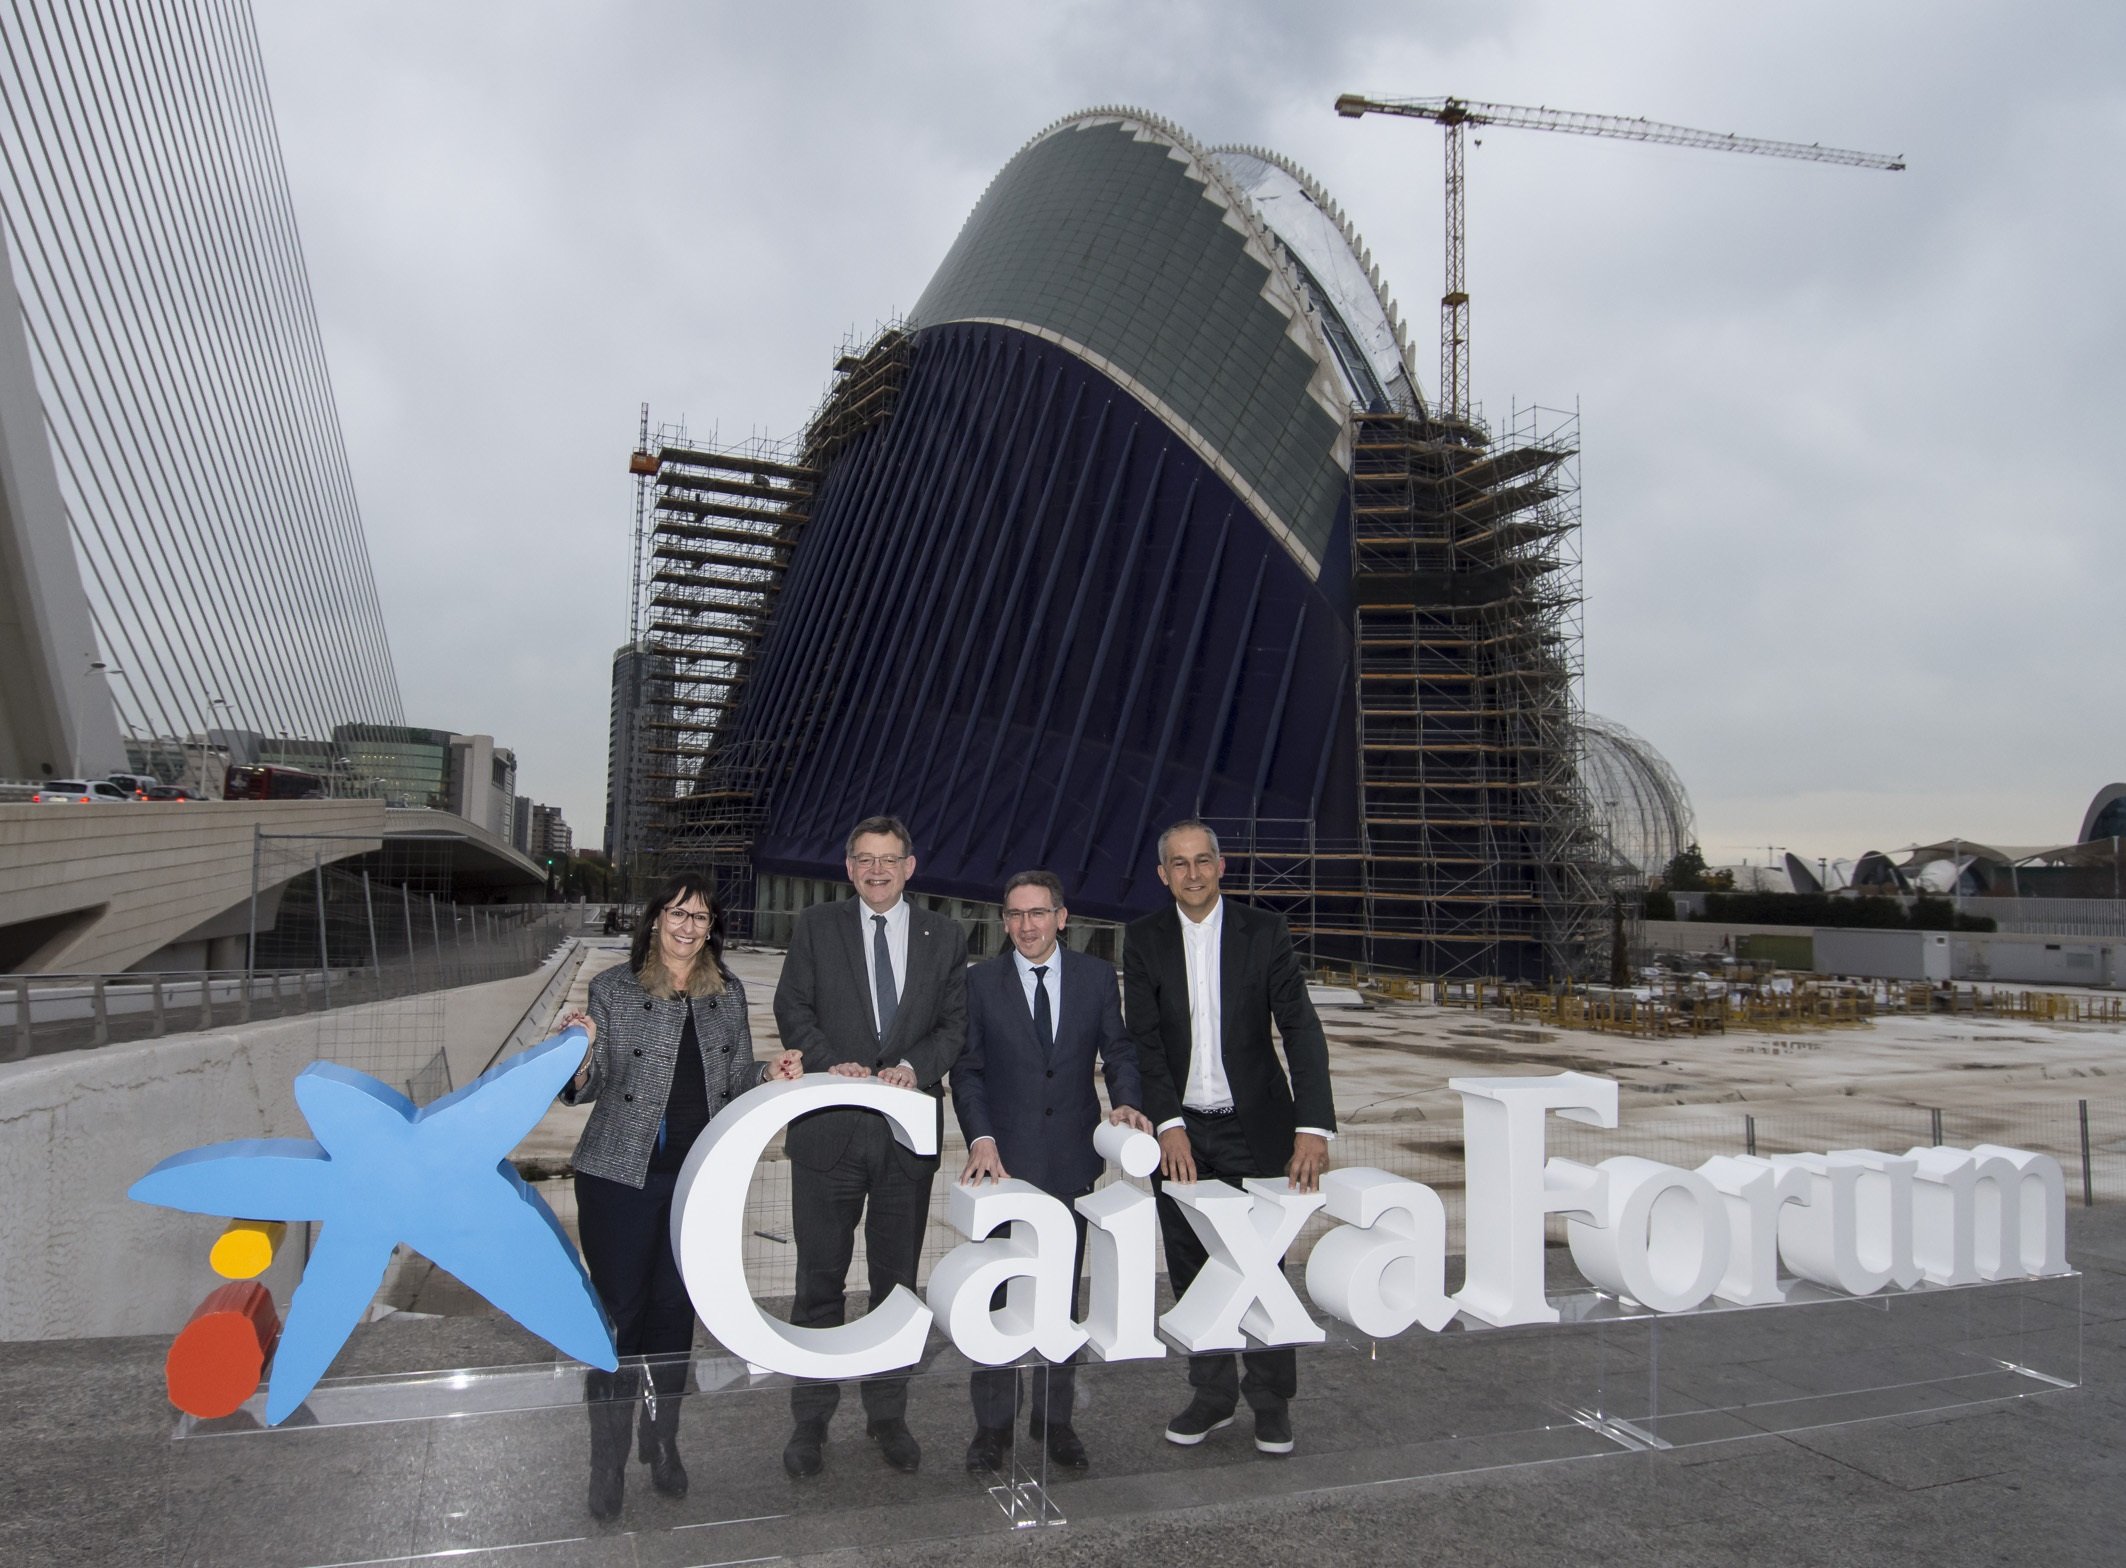 La Caixa resucita el Ágora de València para hacer un CaixaForum